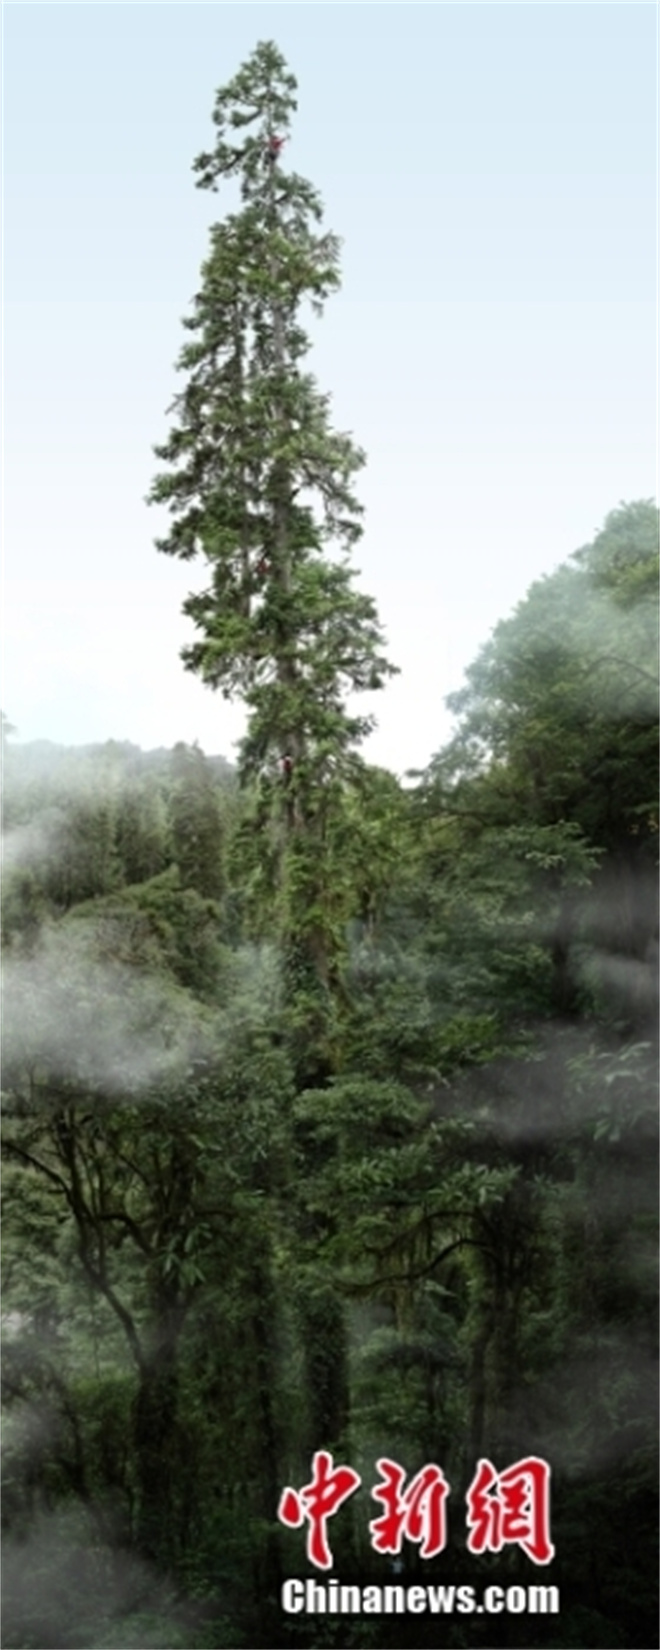 中国“第一高树”纪录刷新 83.4米黄果冷杉等身照首发2.jpg